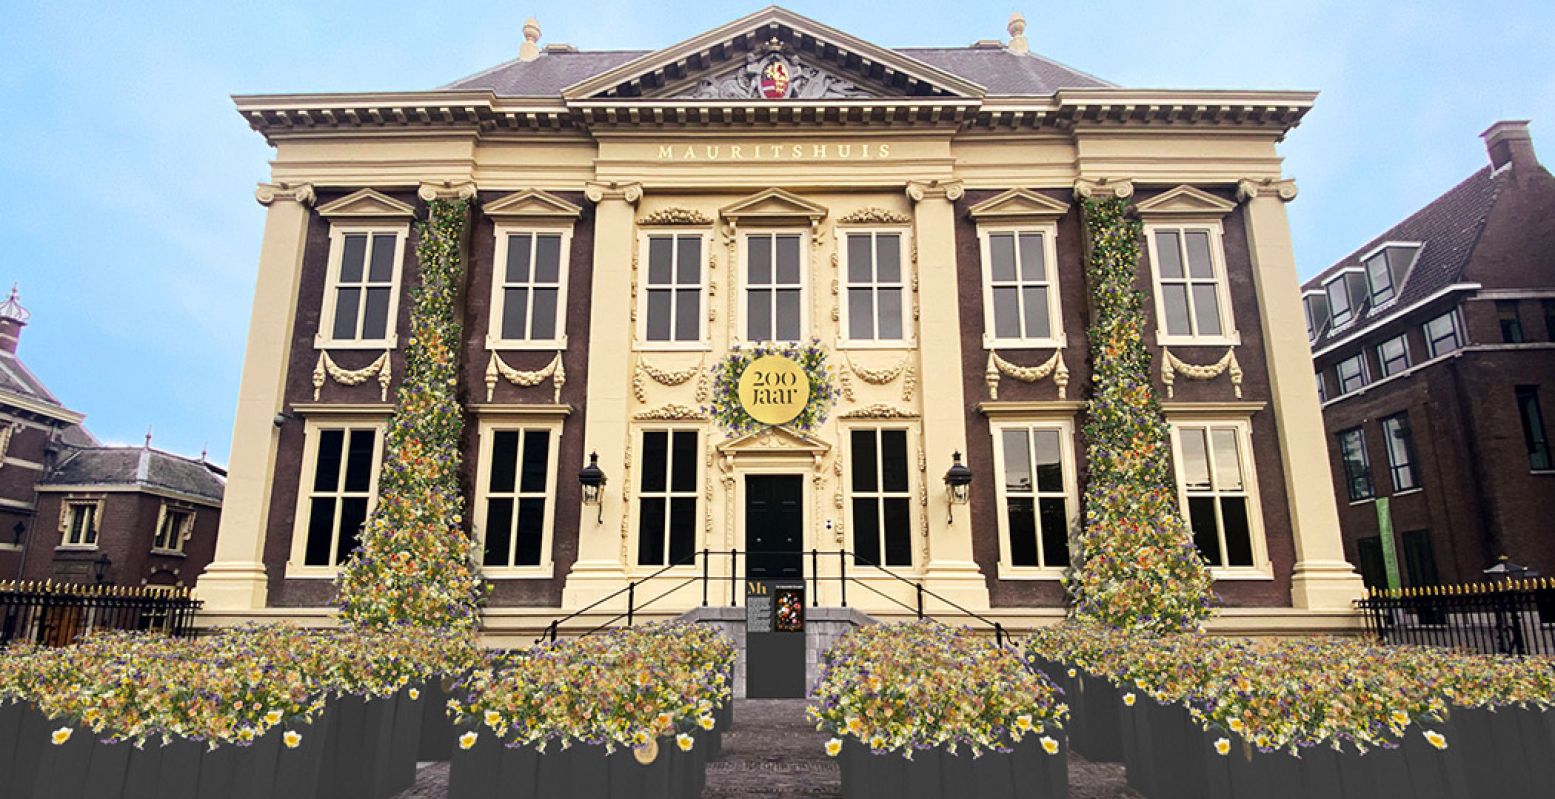 Het Mauritshuis viert haar 200-jarige jubileum in 2022 uitbundig. Zo veranderen het plein voor het museum en de gevel bijna het hele jaar in een kleurige bloemenzee. Foto: Artist impression Tom Postma Design Amsterdam